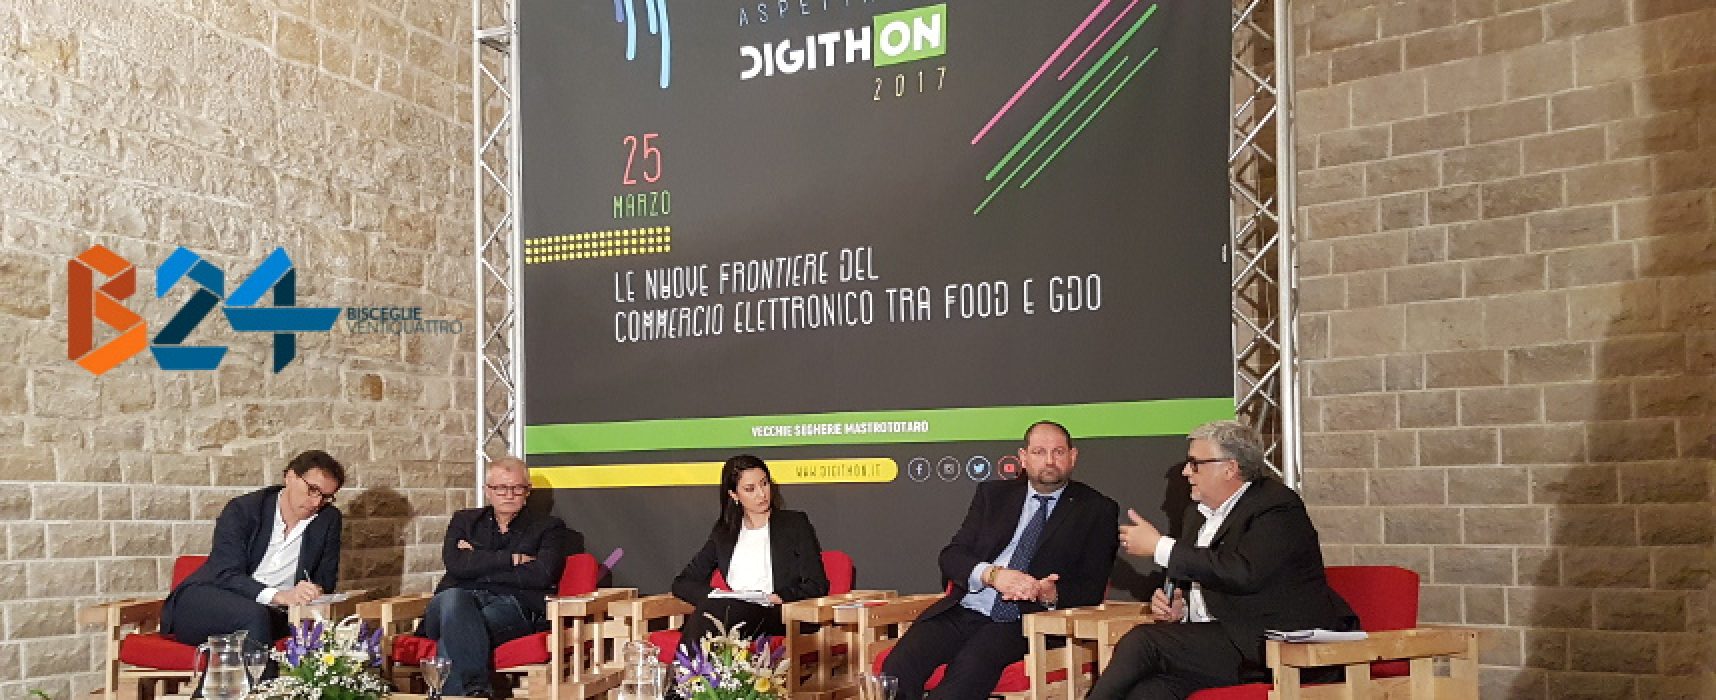 Aspettando DigithON, alle Segherie Mastrototaro dibattito sul commercio elettronico alimentare / VIDEO